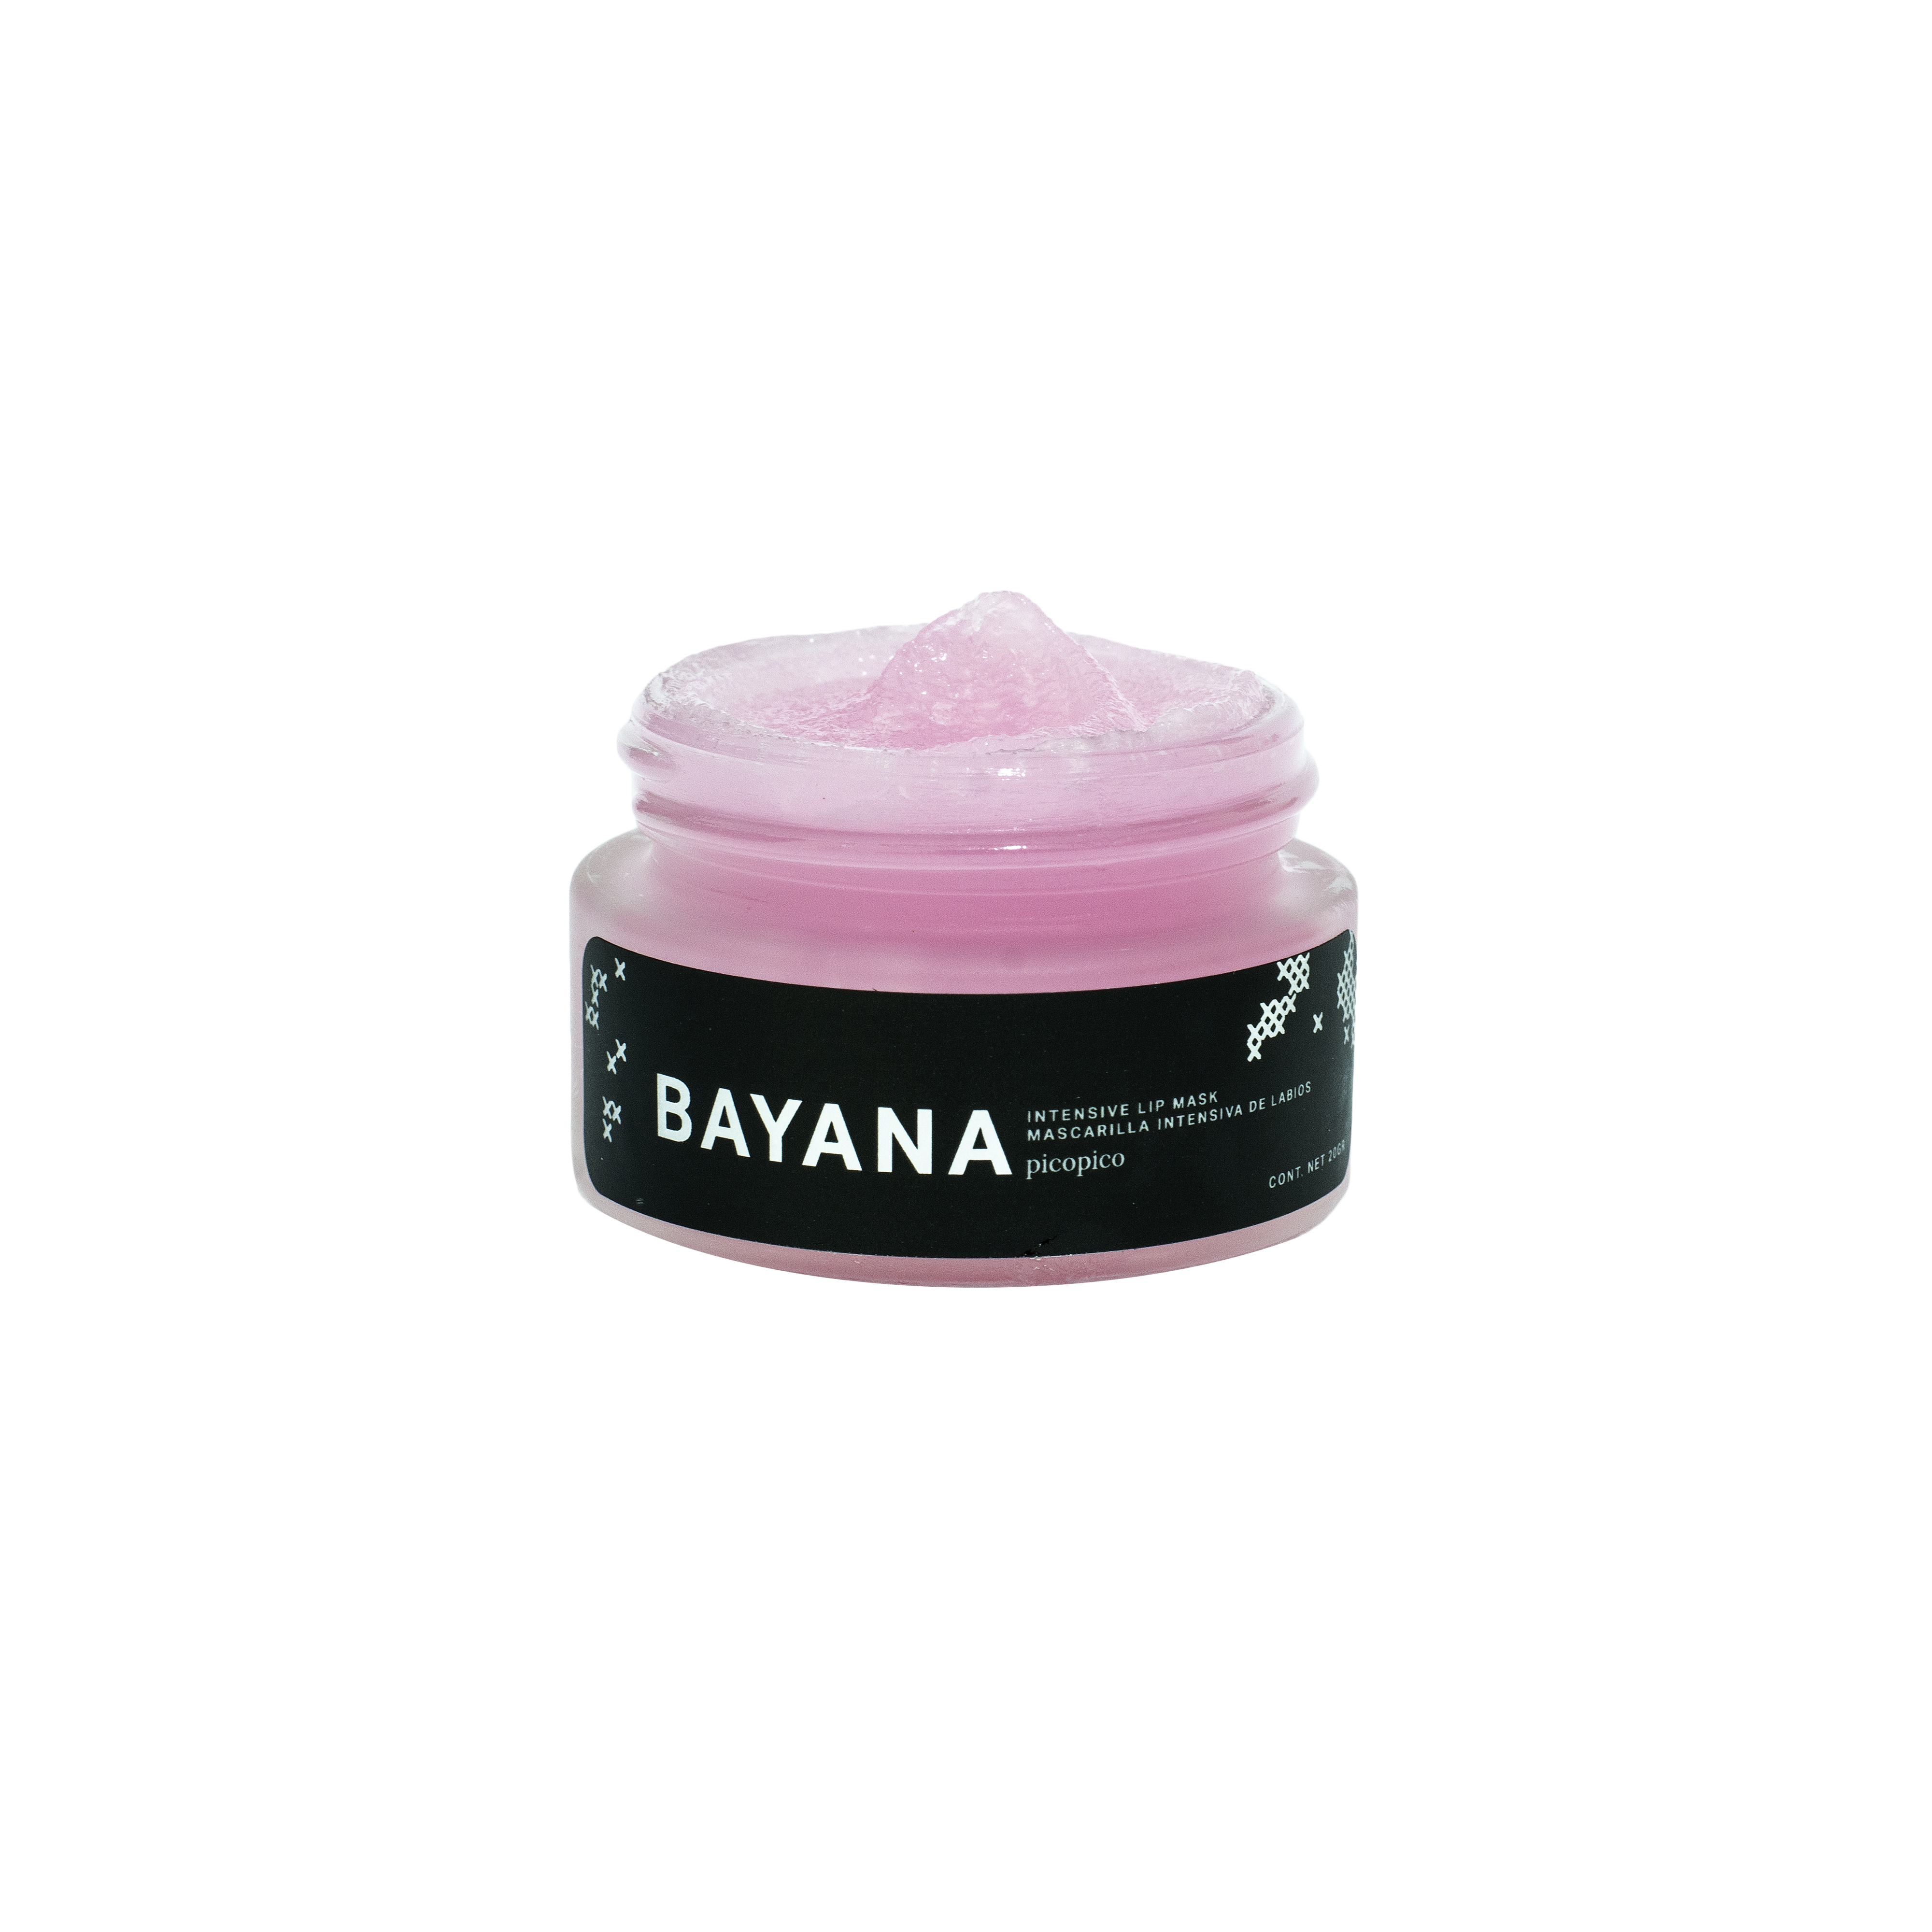 Bayana - Tratamiento intensivo de labios